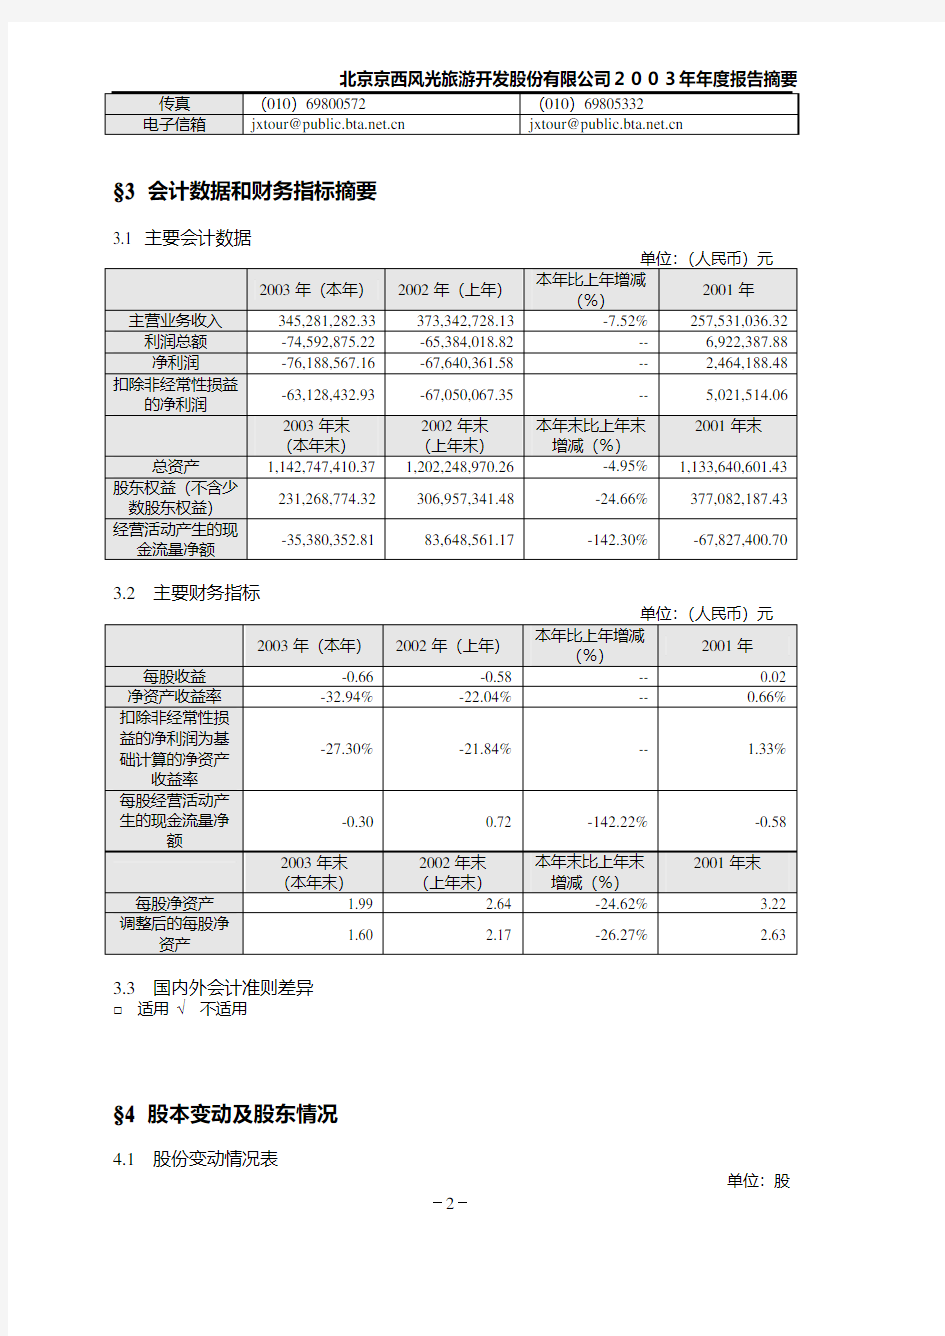 北京京西风光旅游开发股份有限公司2003年年度报告摘要